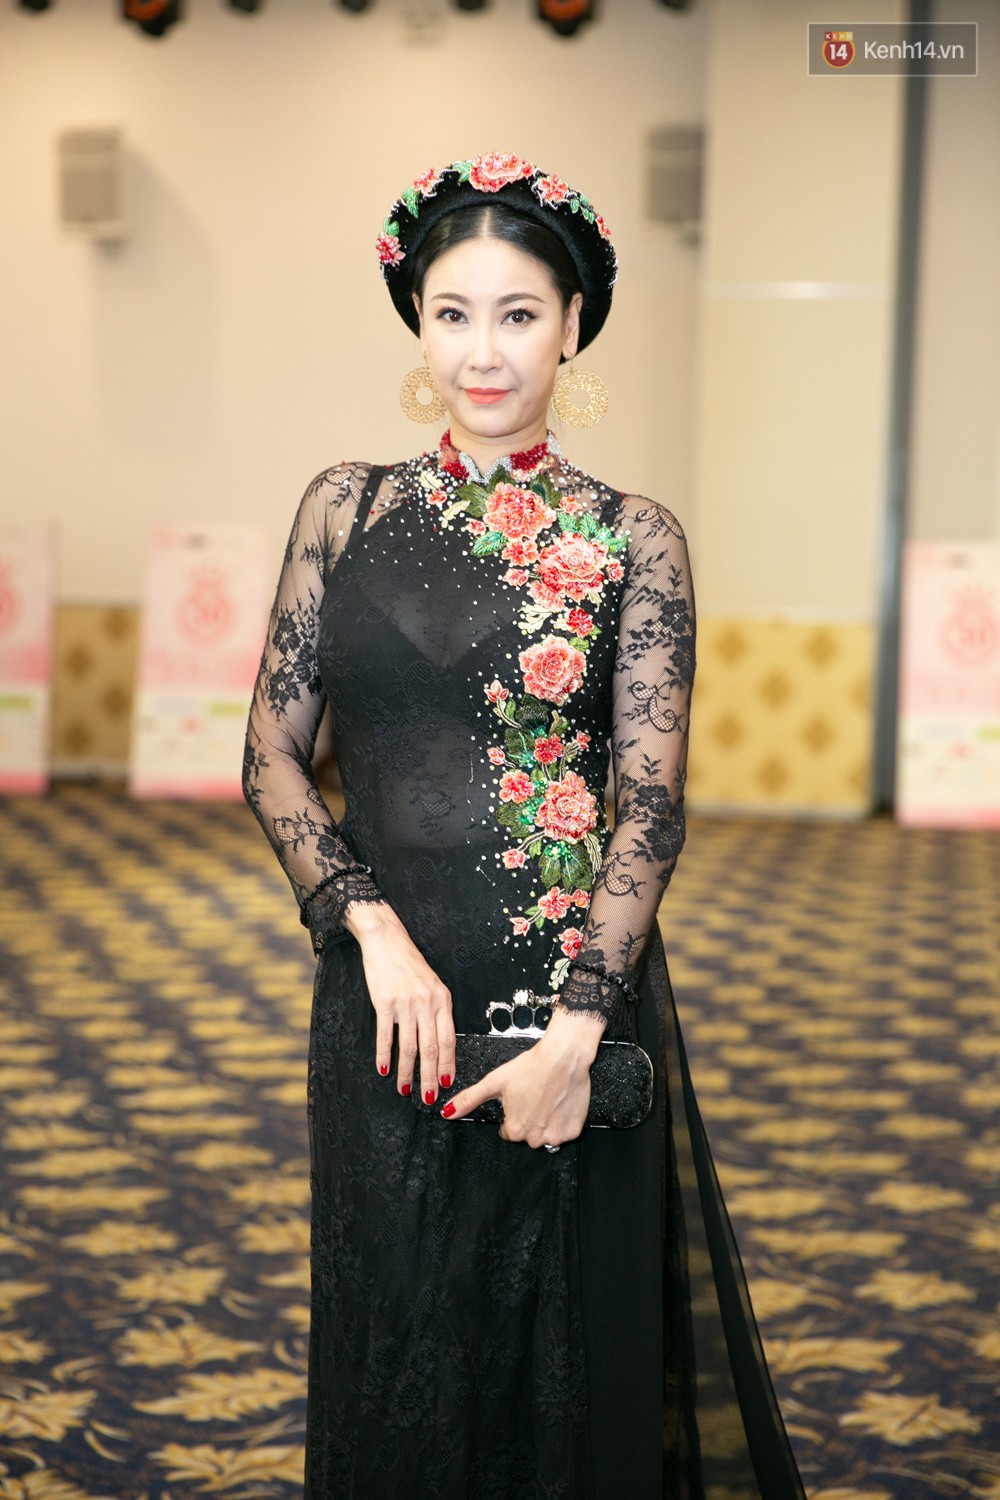 Trước thềm chung kết, hé lộ cận cảnh vương miện, quyền trượng giá trị của Tân Hoa hậu Việt Nam 2018 - Ảnh 5.